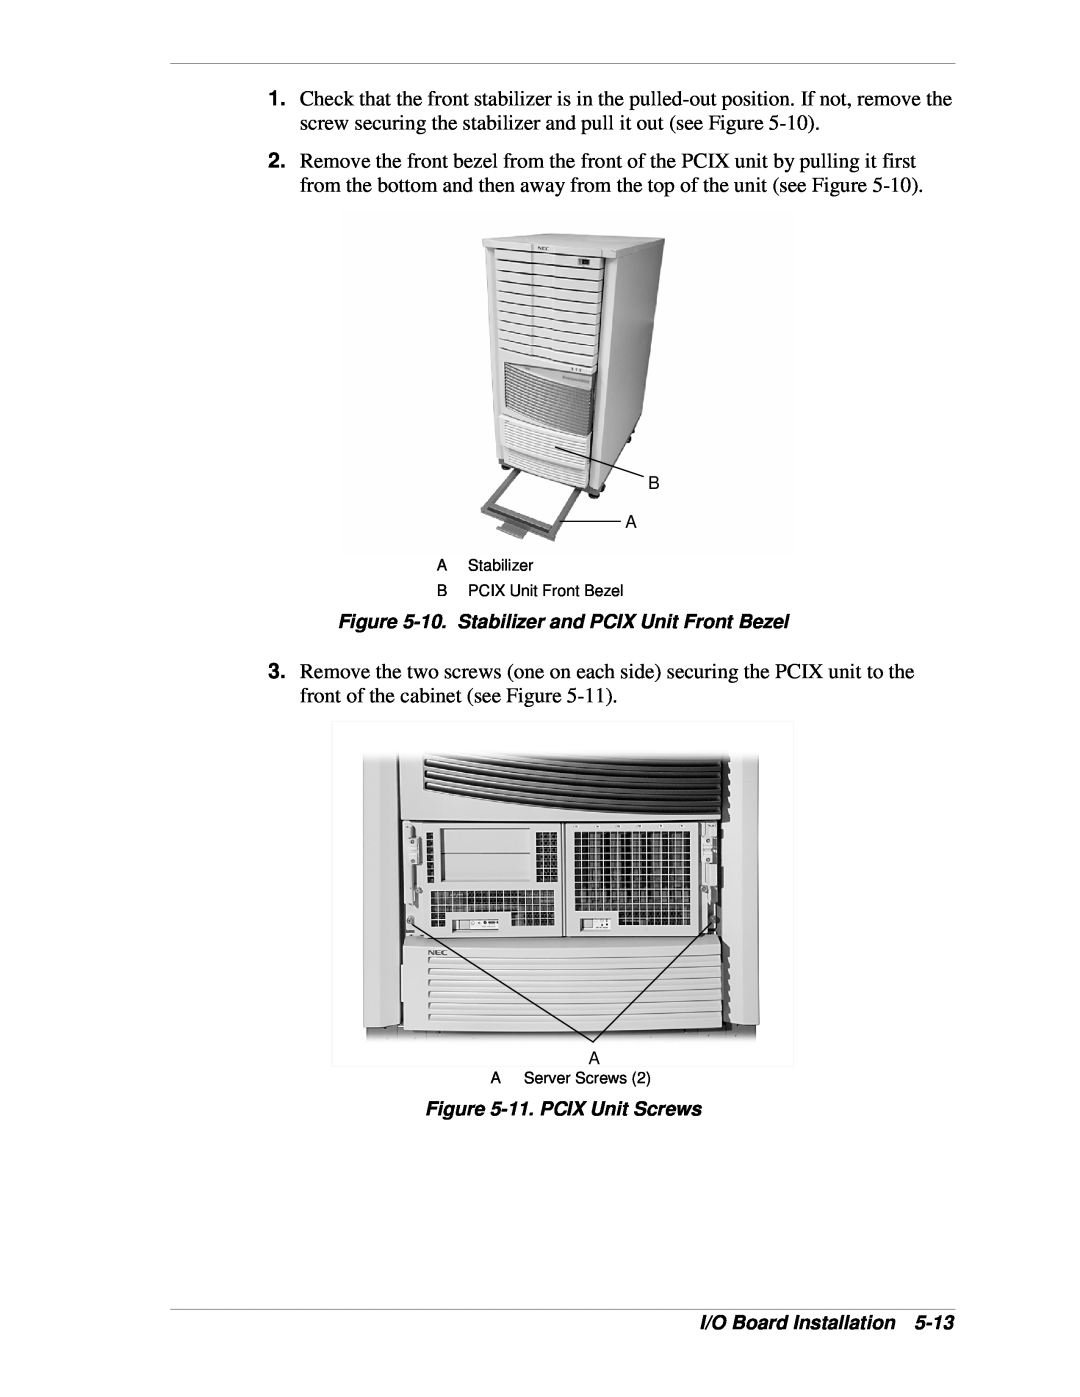 NEC 1080Xd manual 10. Stabilizer and PCIX Unit Front Bezel, 11. PCIX Unit Screws, I/O Board Installation, A Server Screws 